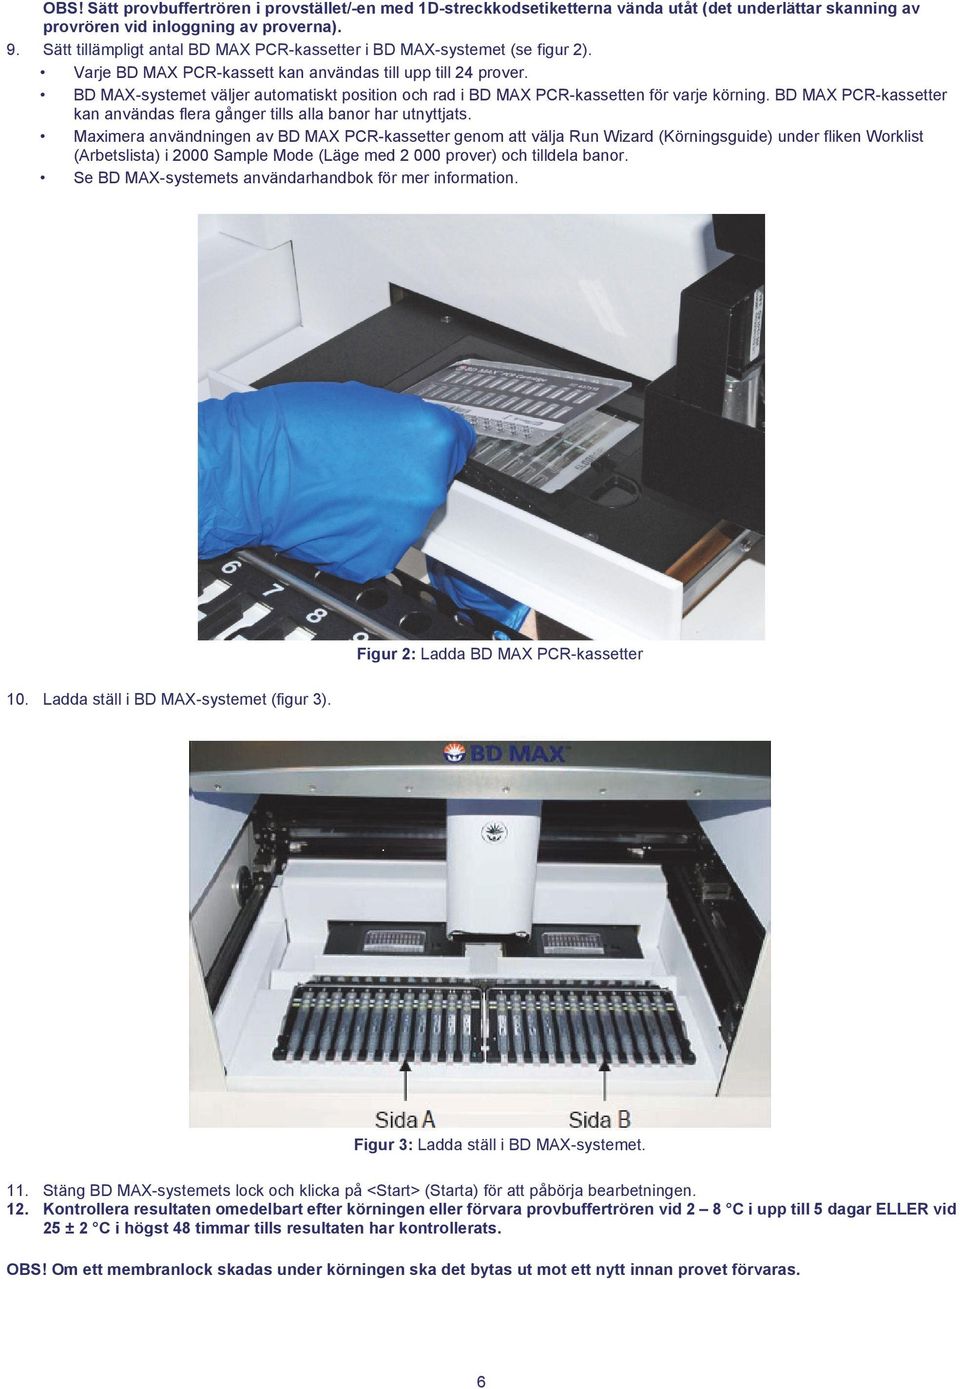 BD MAX-systemet väljer automatiskt position och rad i BD MAX PCR-kassetten för varje körning. BD MAX PCR-kassetter kan användas flera gånger tills alla banor har utnyttjats.